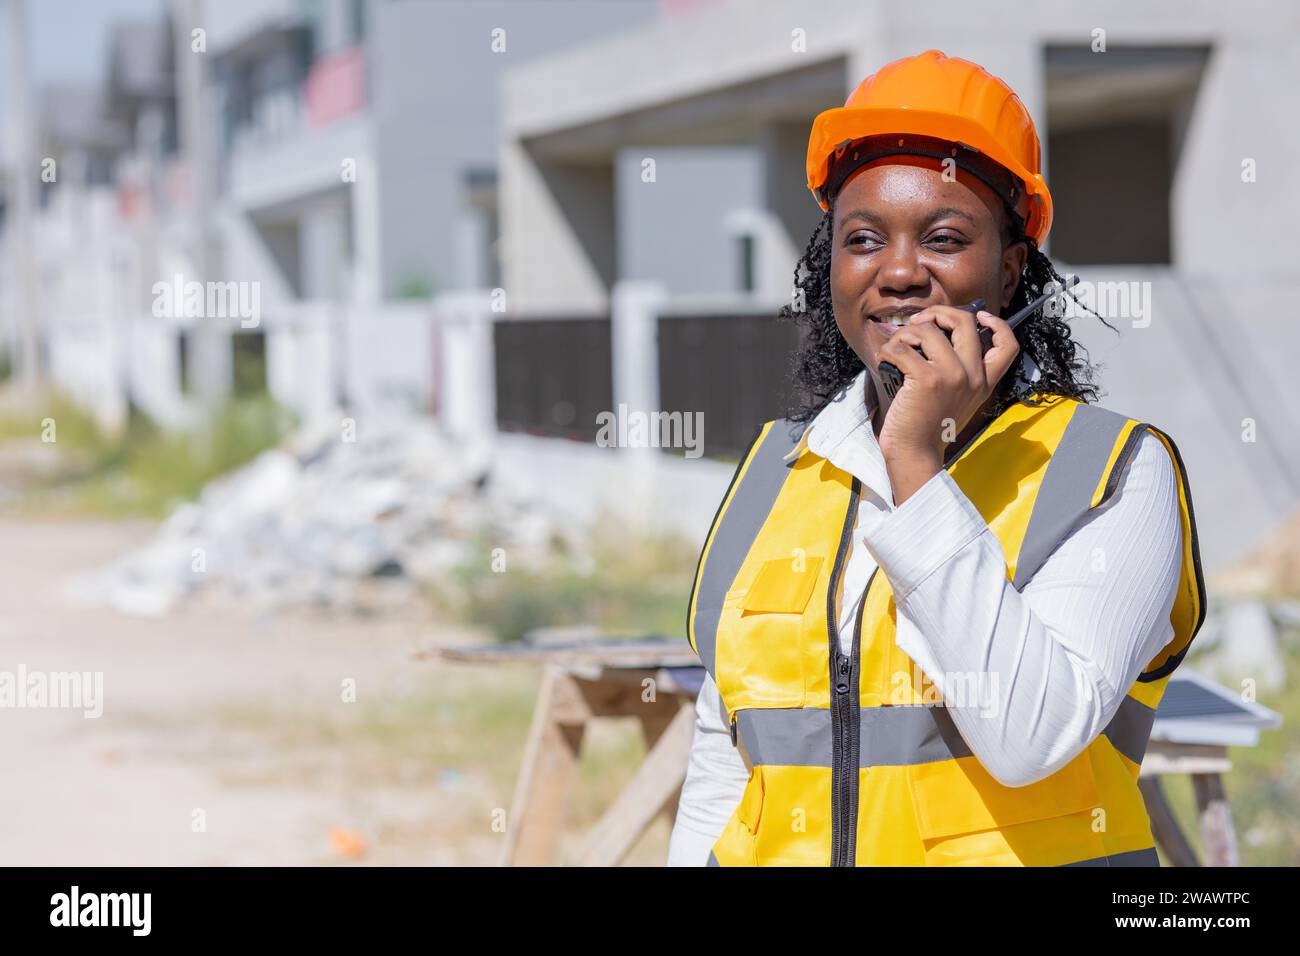 Smart Women worker, ingénieur de construction professionnel contremaître entrepreneur de contrôle de travail d'exploitation de chantier de construction en position de gestionnaire de projet. Banque D'Images